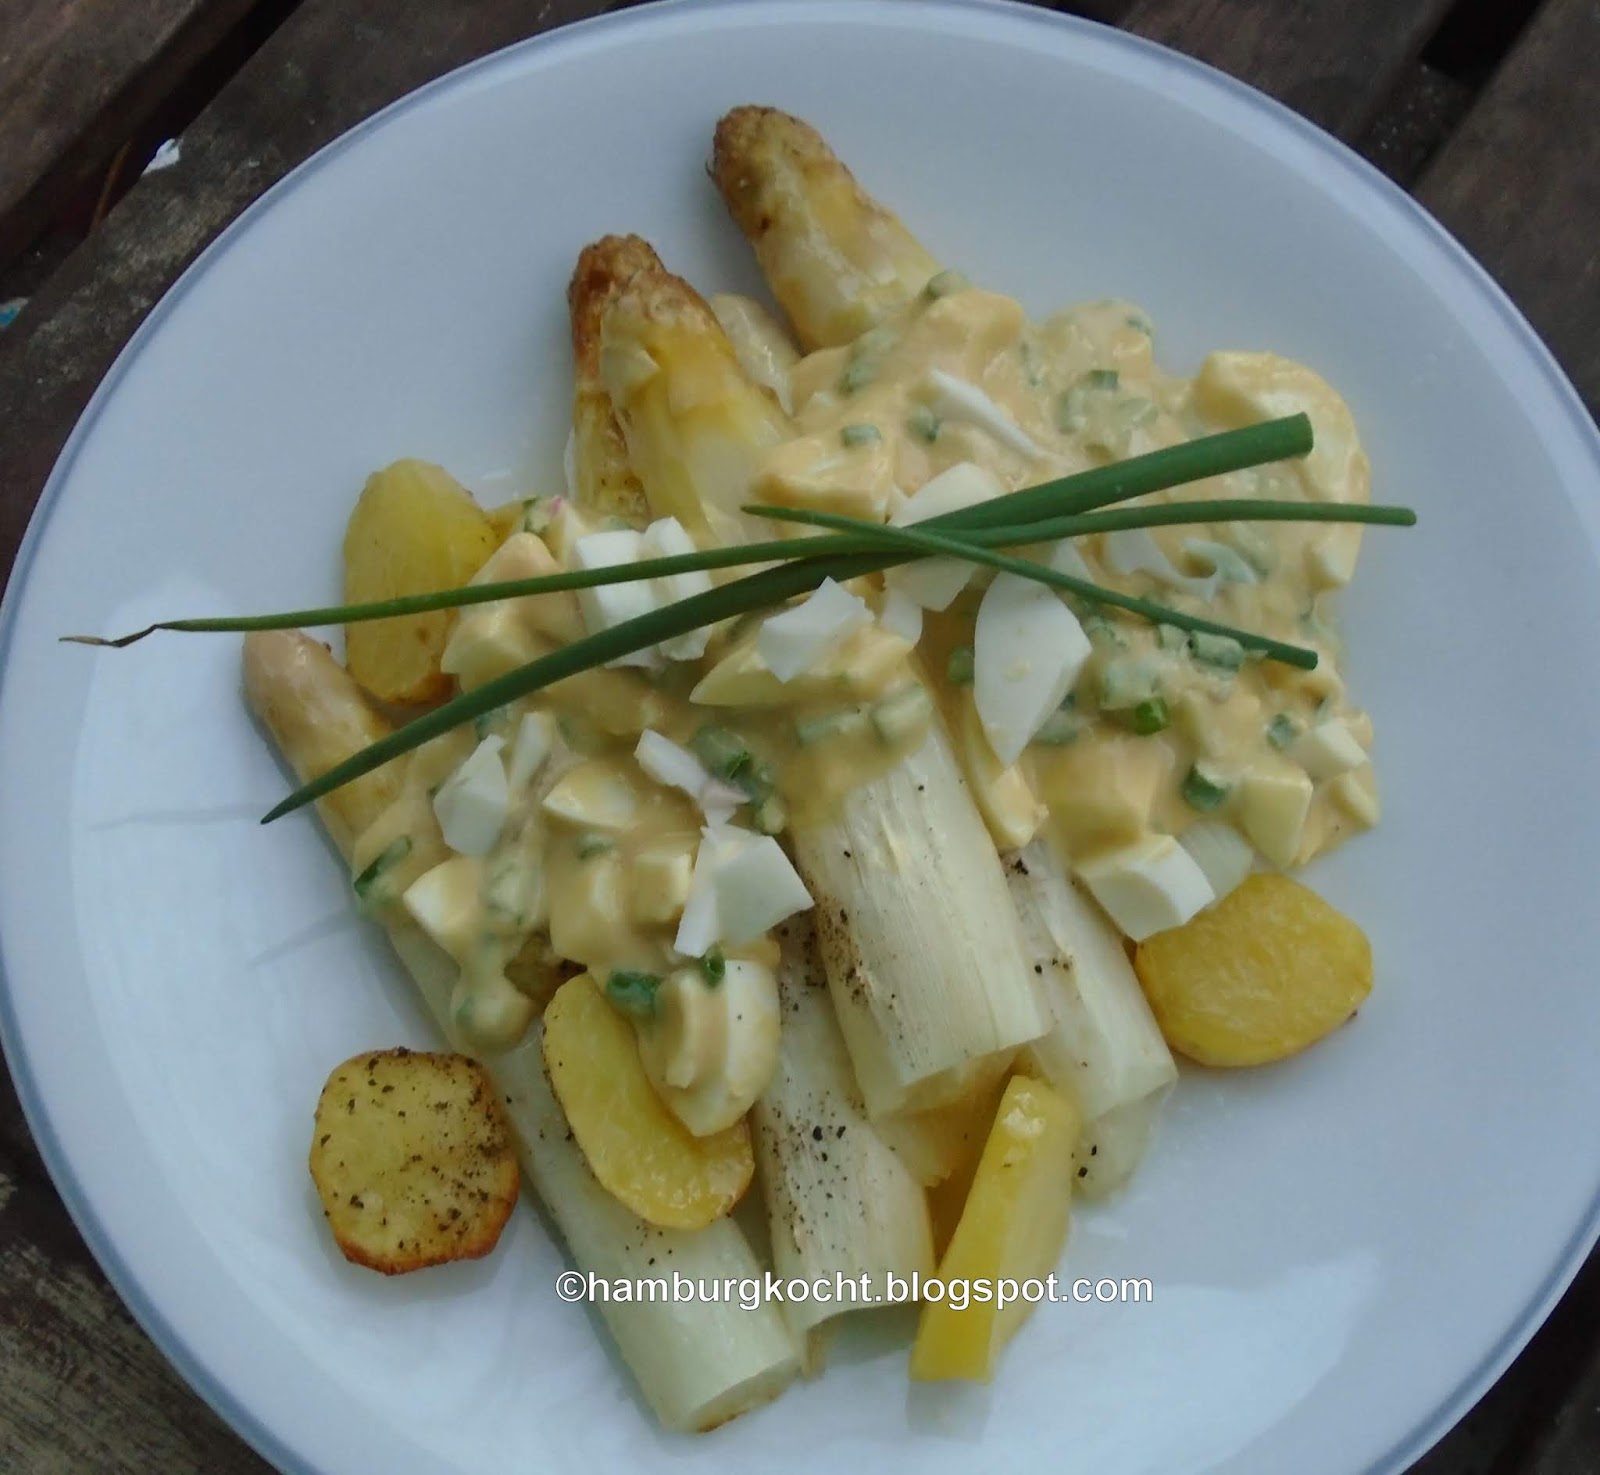 Hamburg kocht!: Ofen-Spargel mit Ofen-Kartoffeln und Bozener Sauce